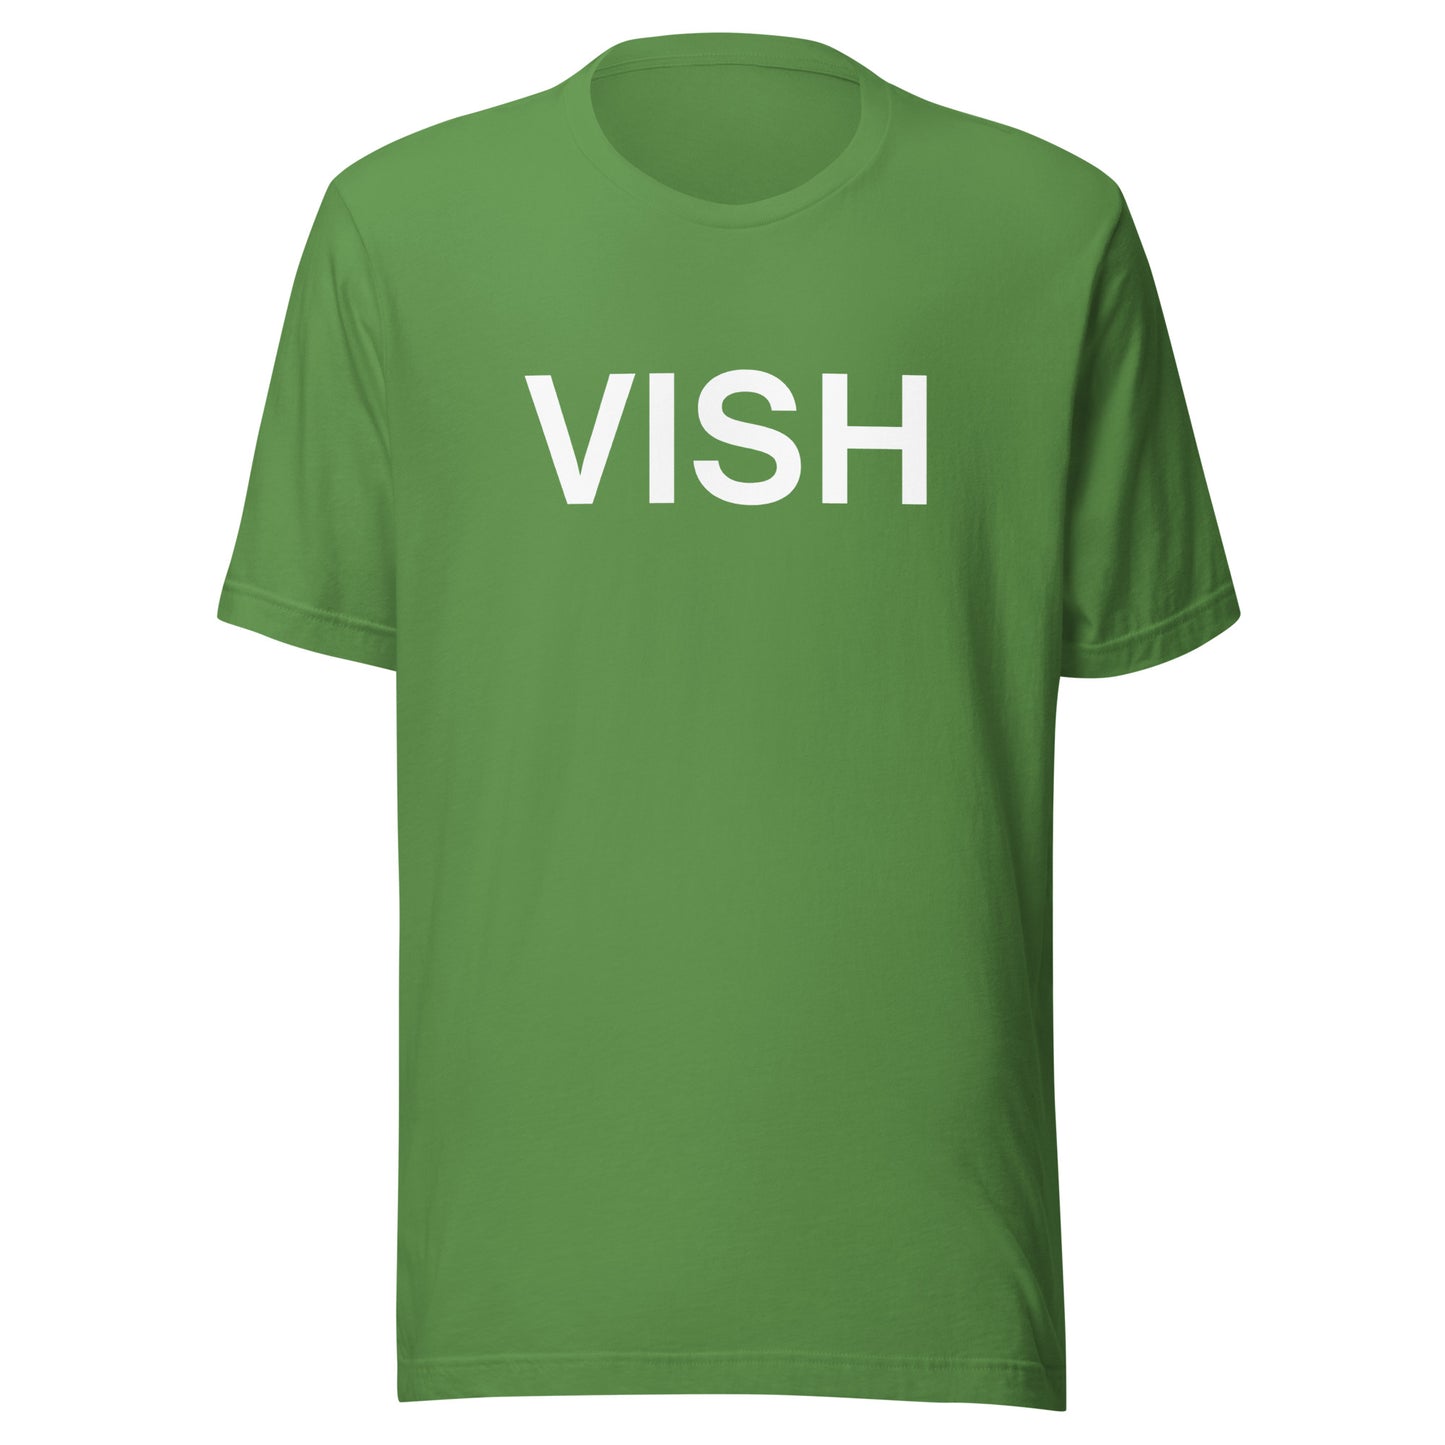 VISH t-shirt (Unisex)